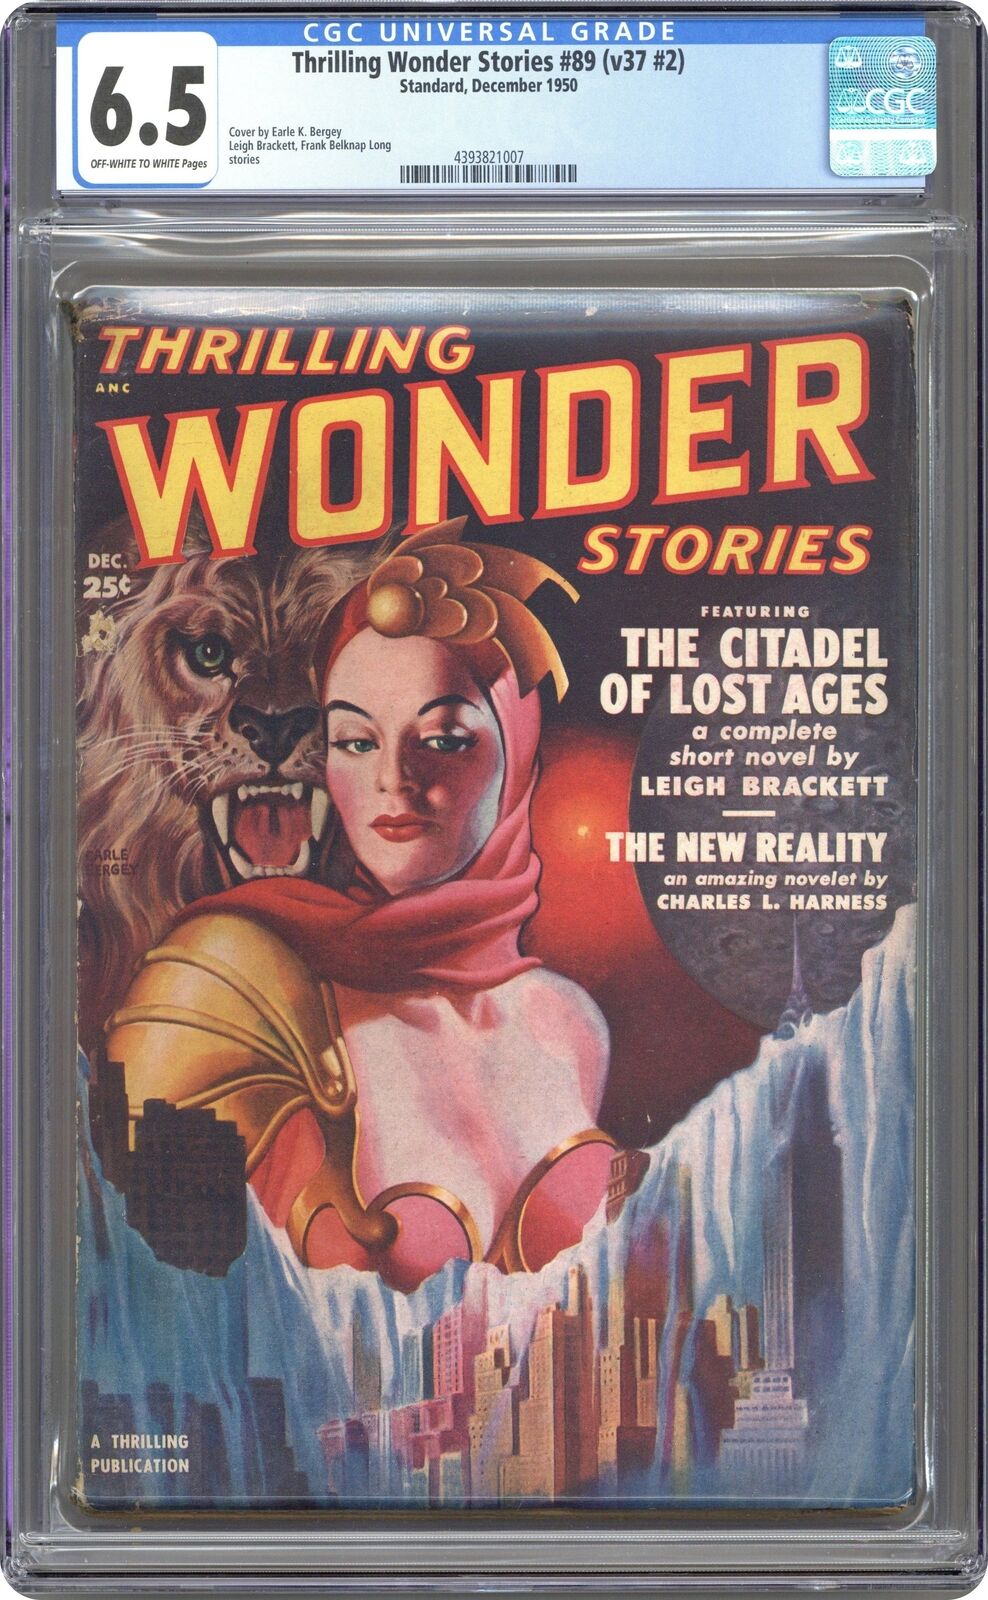 Thrilling Wonder Stories Pulp Dec 1950 Vol. 37 #2 CGC 6.5 4393821007